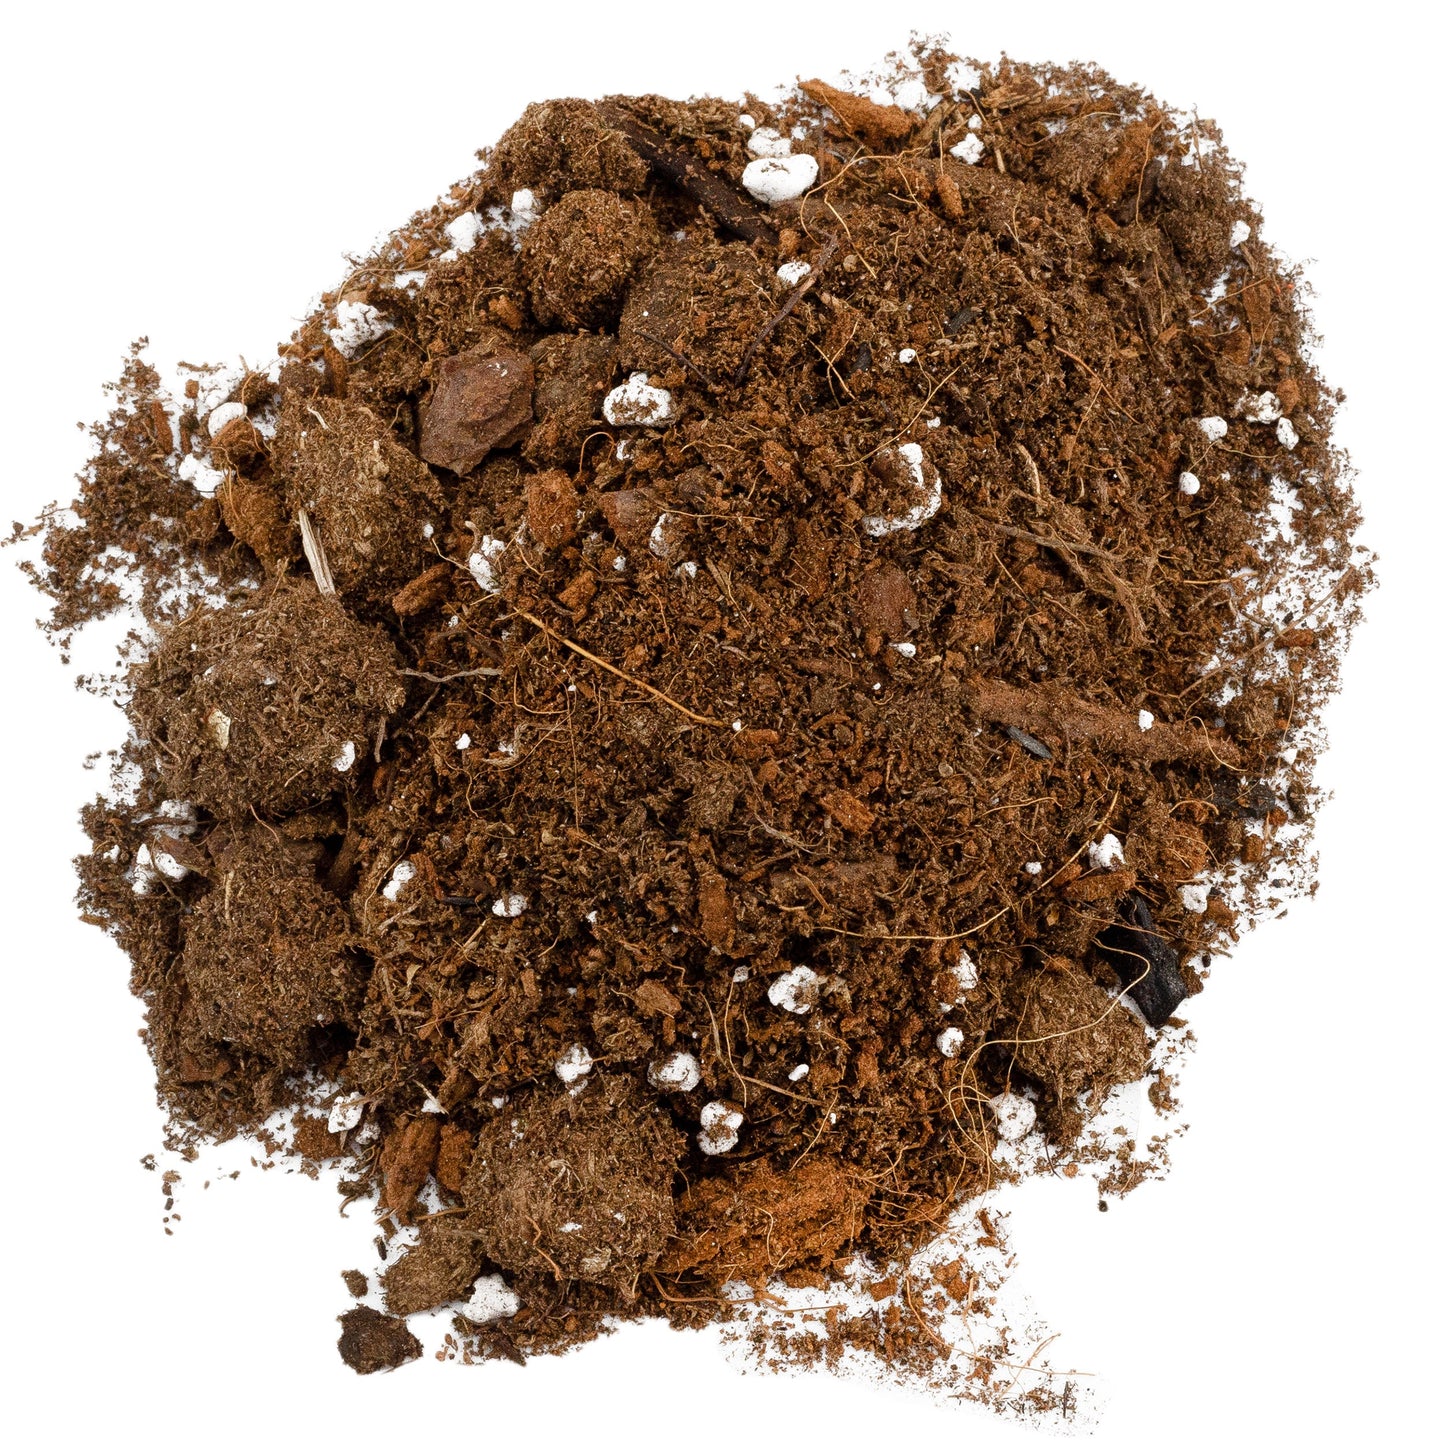 Monstera Houseplant Potting Soil Mix (4 Quarts) - SSKIT069